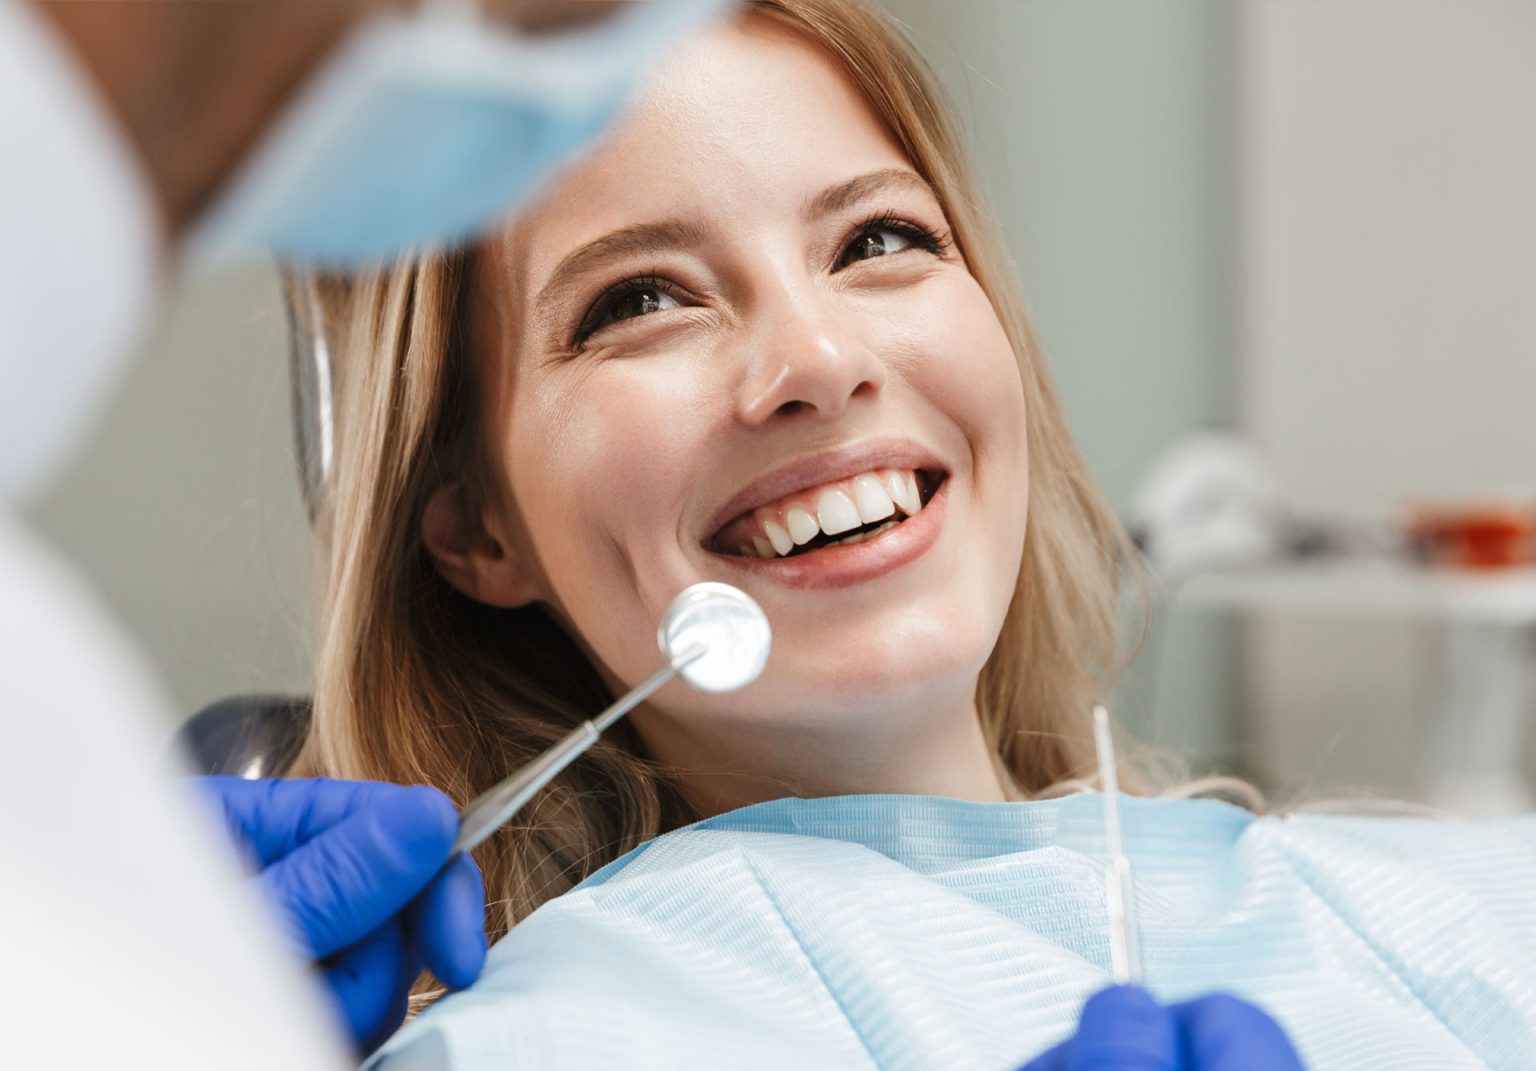 sorriso poltrona odontoiatrica dentista bologna centro smm 1536x1071 1